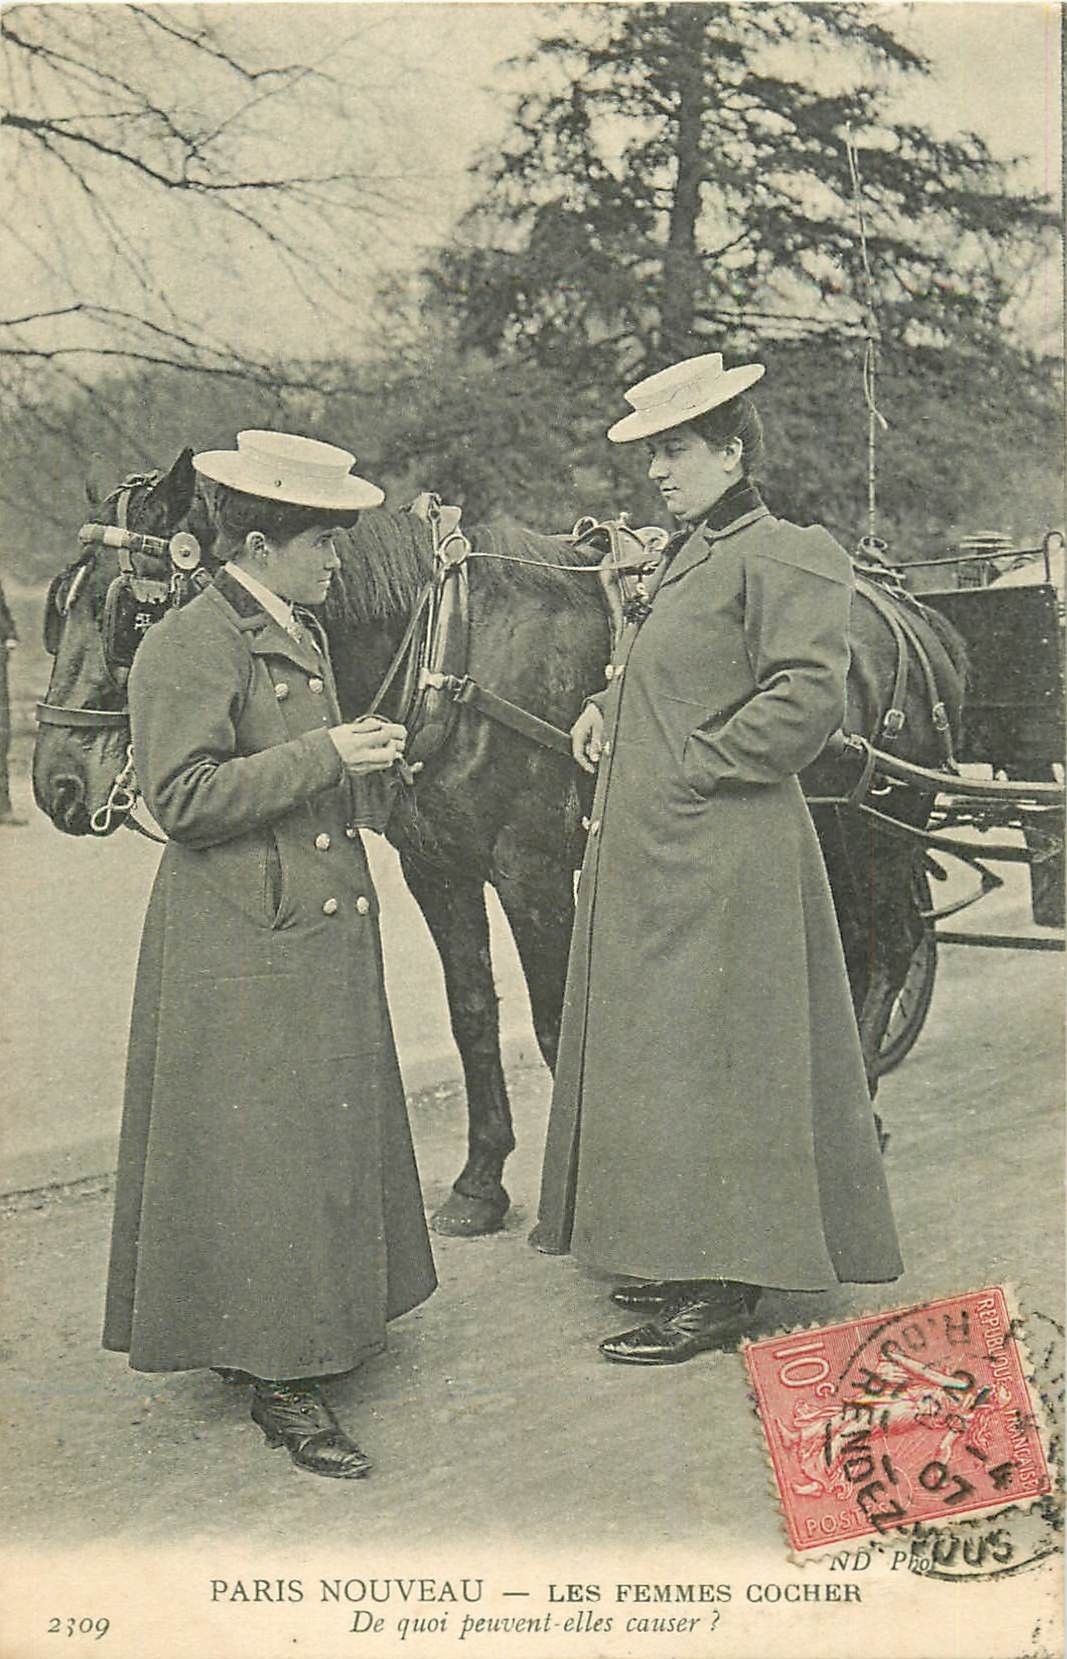 PARIS NOUVEAU. Les Femmes Cocher Cochère 1907. De quoi causent-elles ?